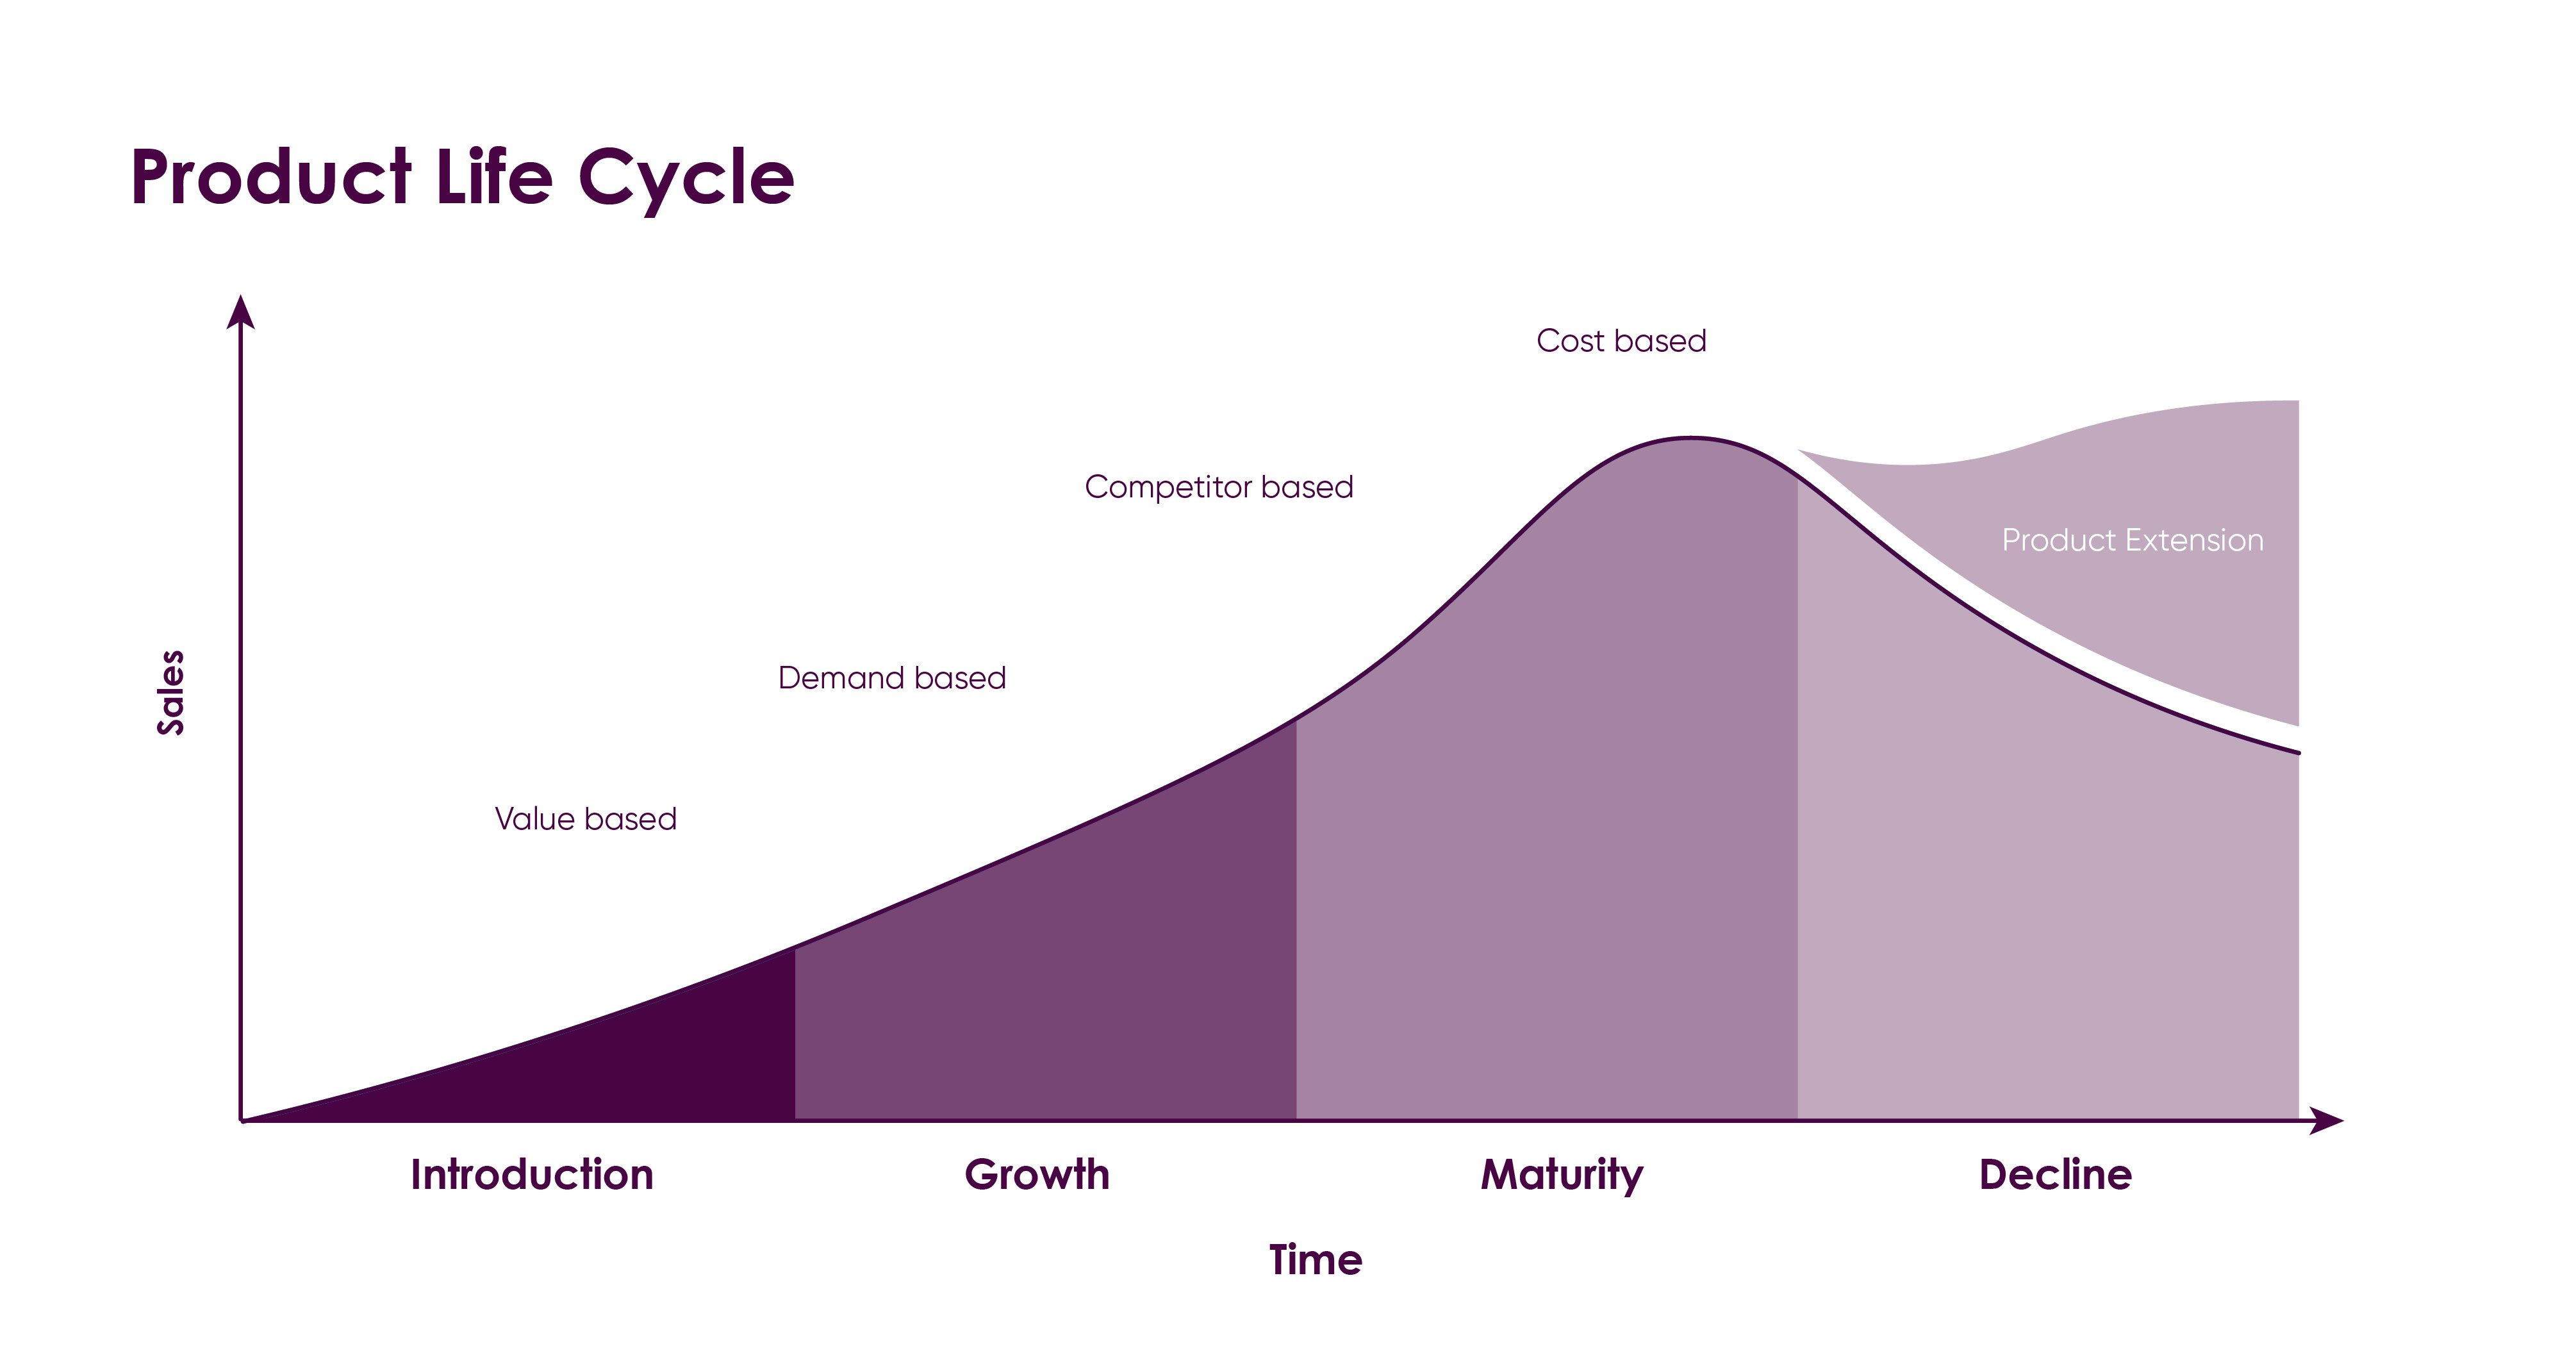 omniaretail_linkedin_blog_post_PLCstrategies__product_life_cycle_graph-jpg